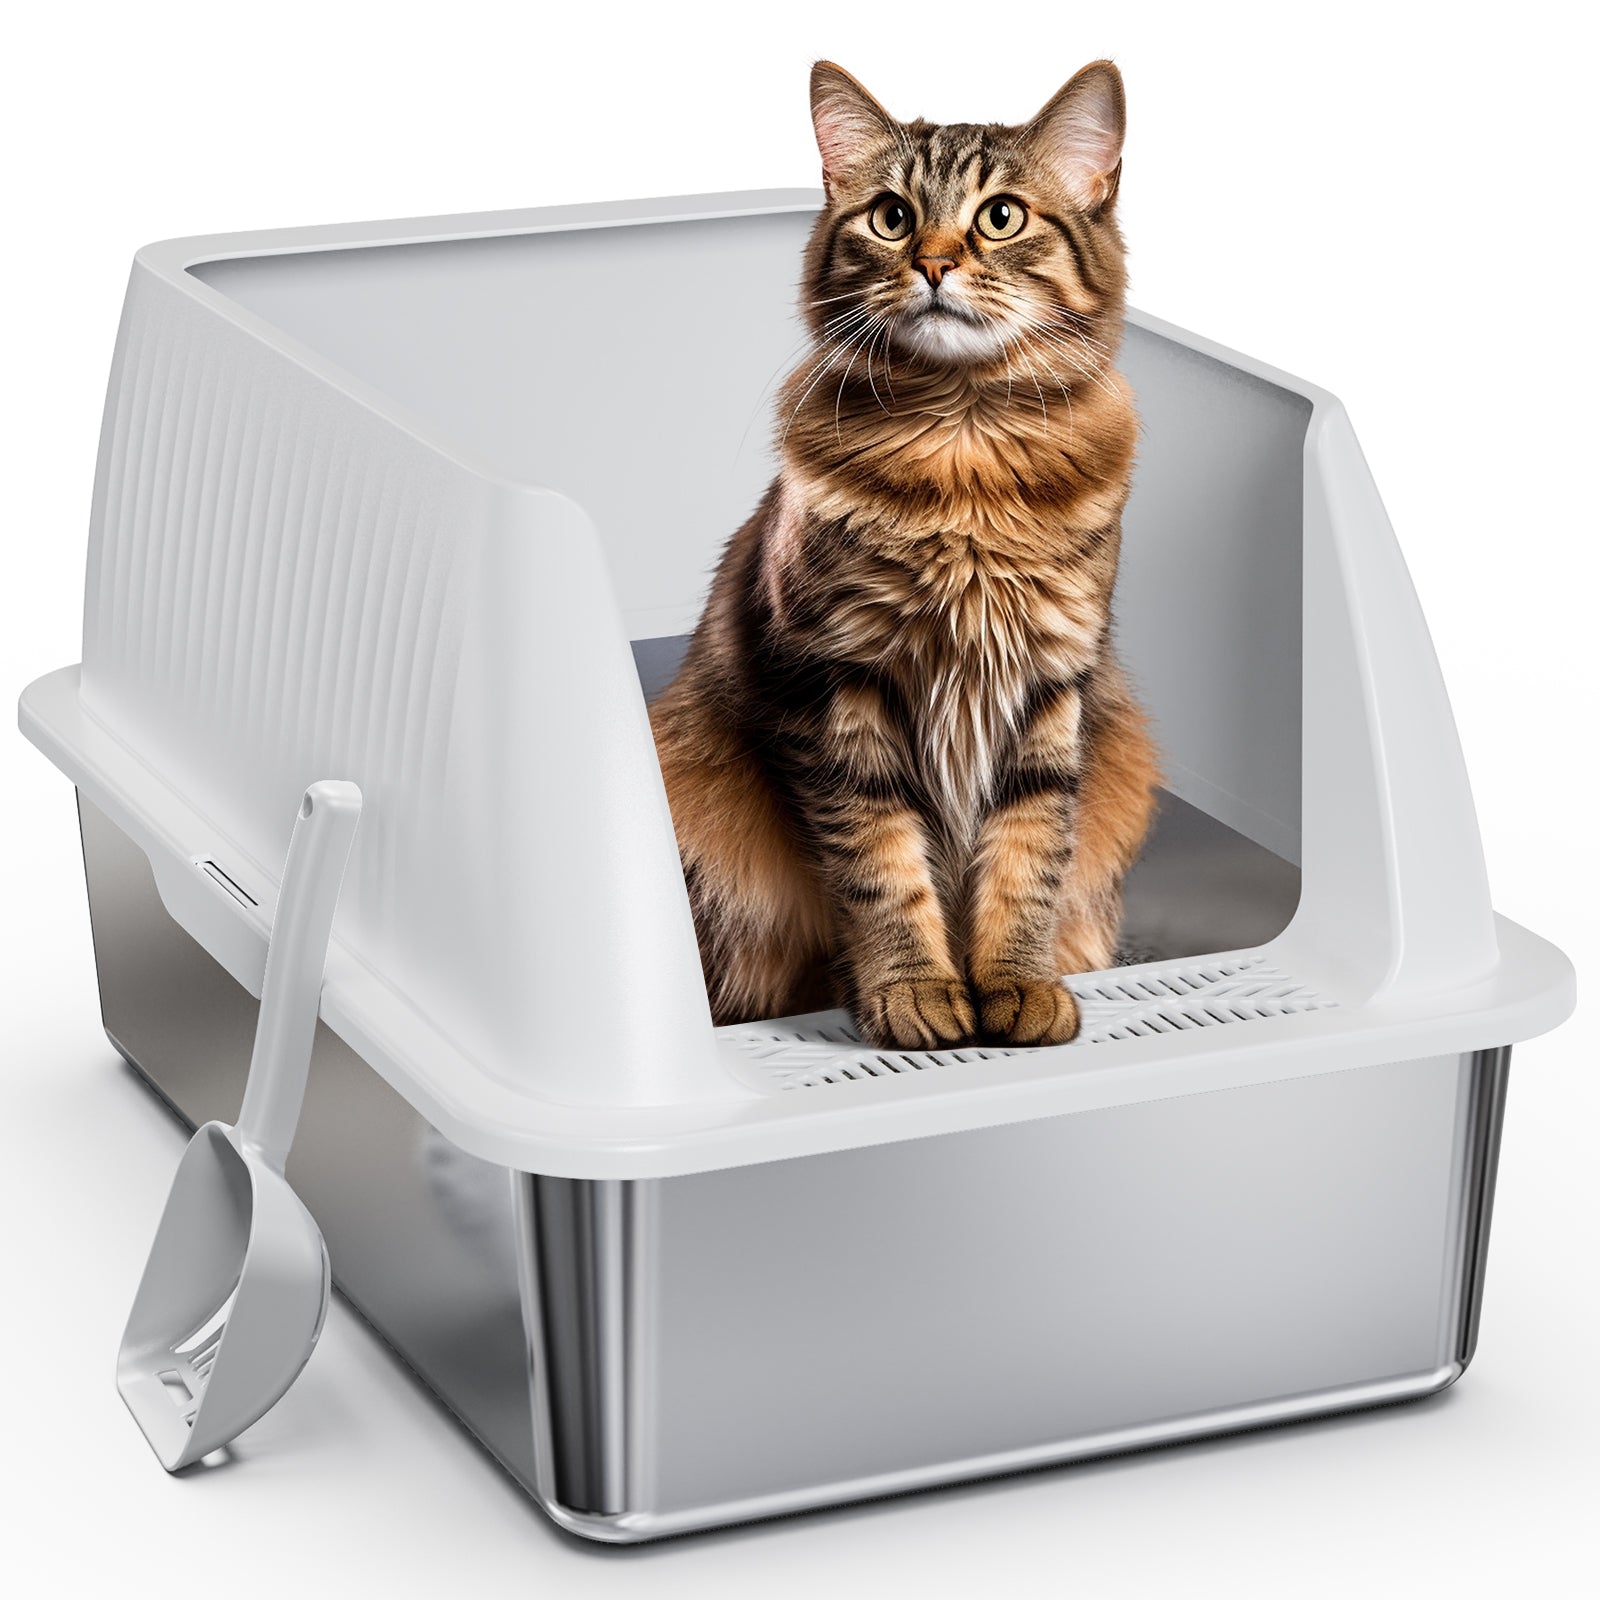 Stainless Steel Cat Litter Box V2